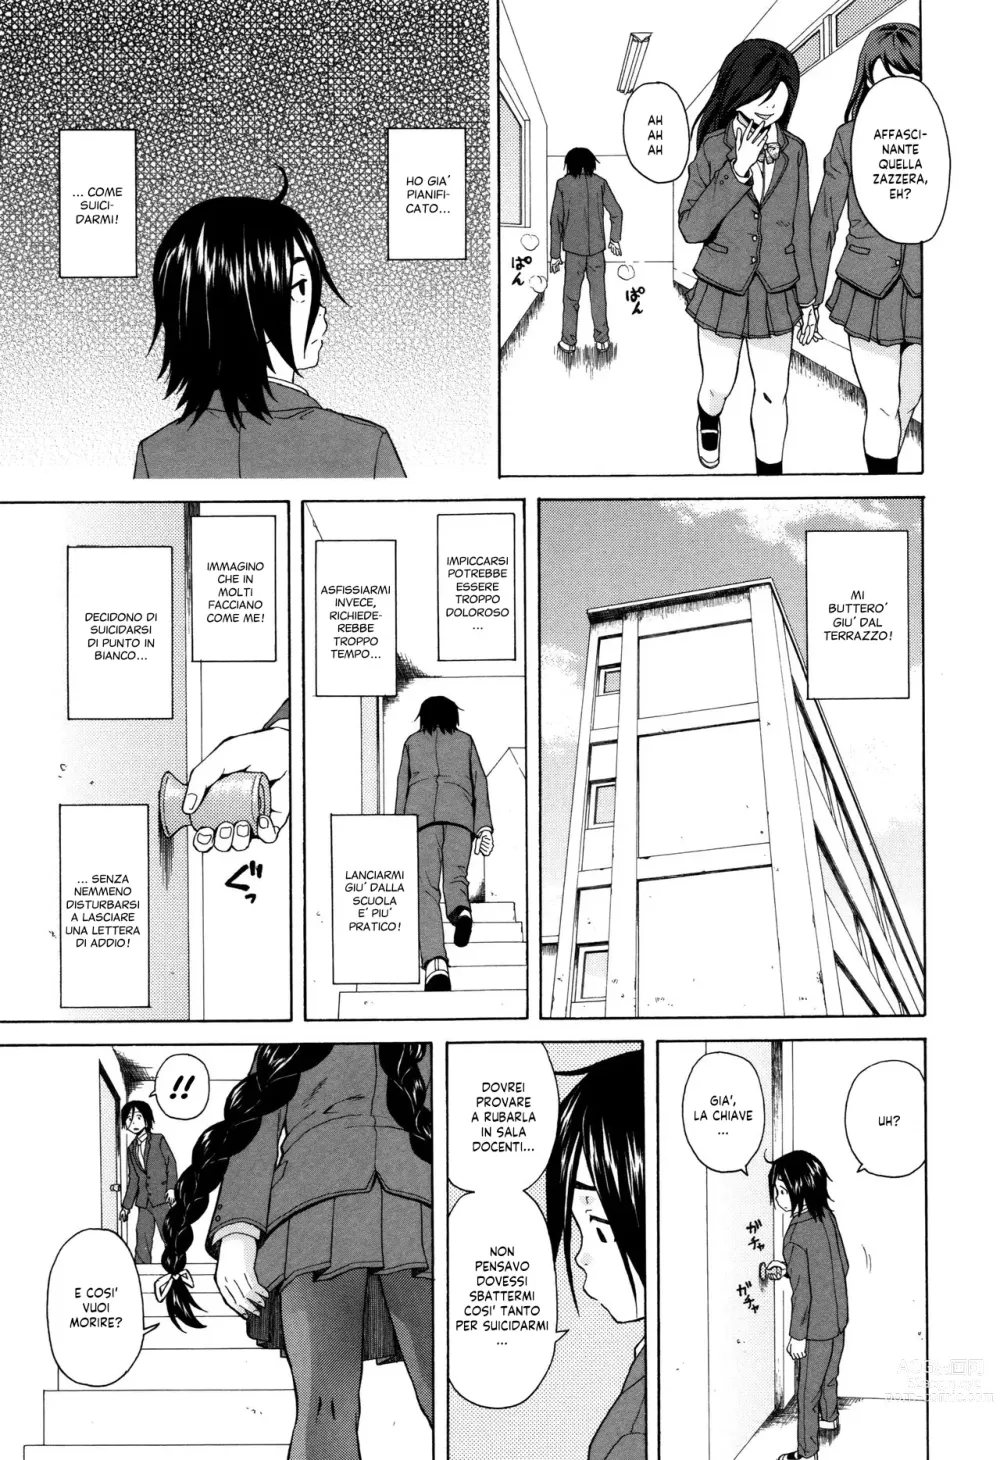 Page 12 of manga Segreti, Suicidi e Sorelle (decensored)